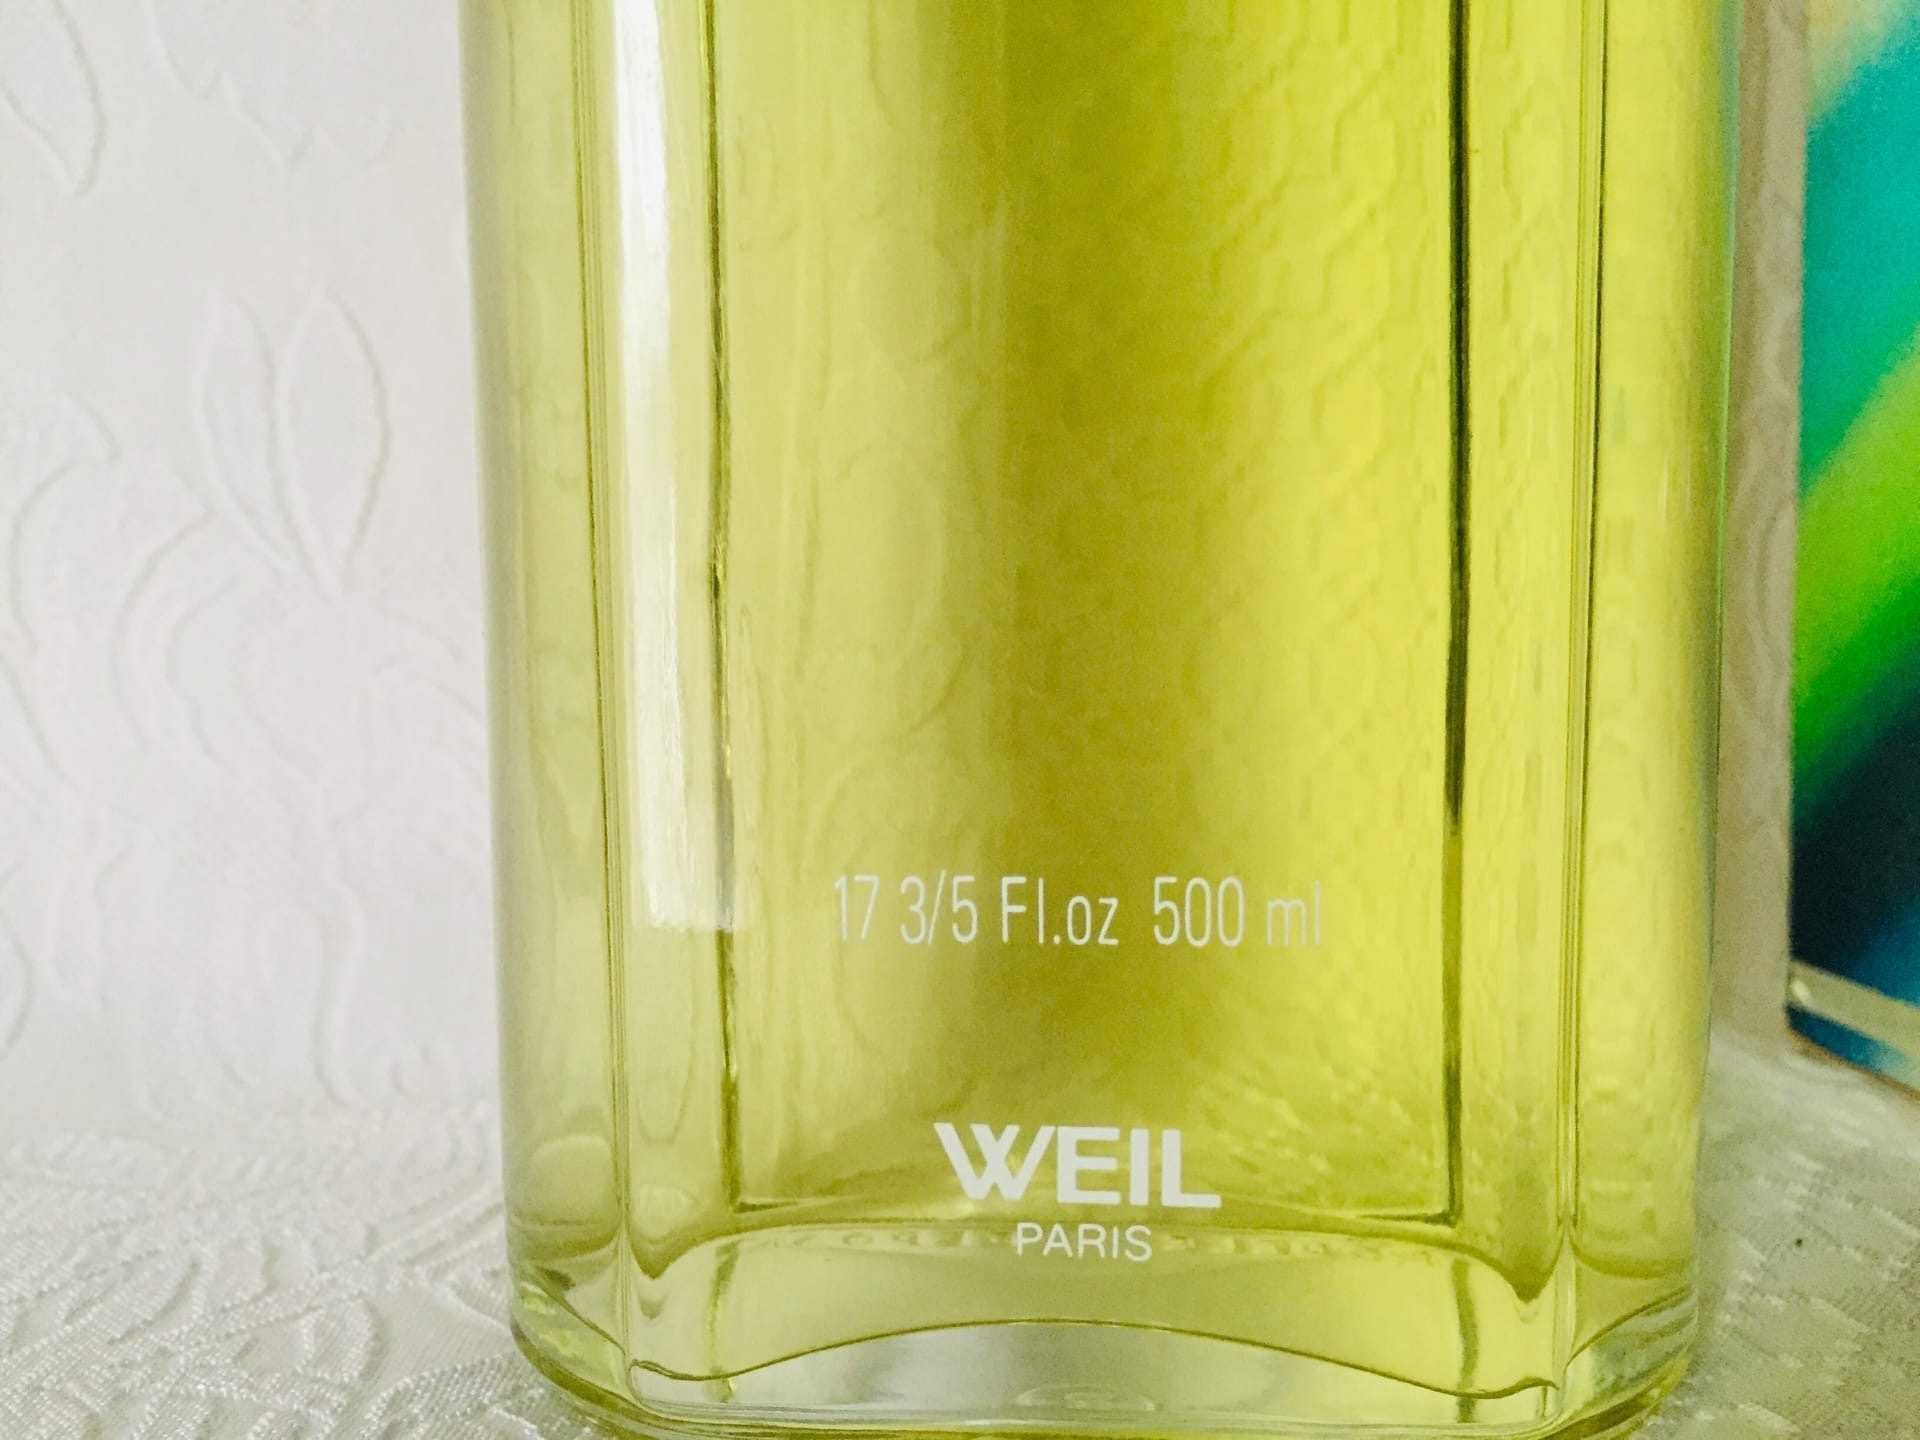 Vintage Eau de Fraicheur  Weil Parfums Paris 500 ml.